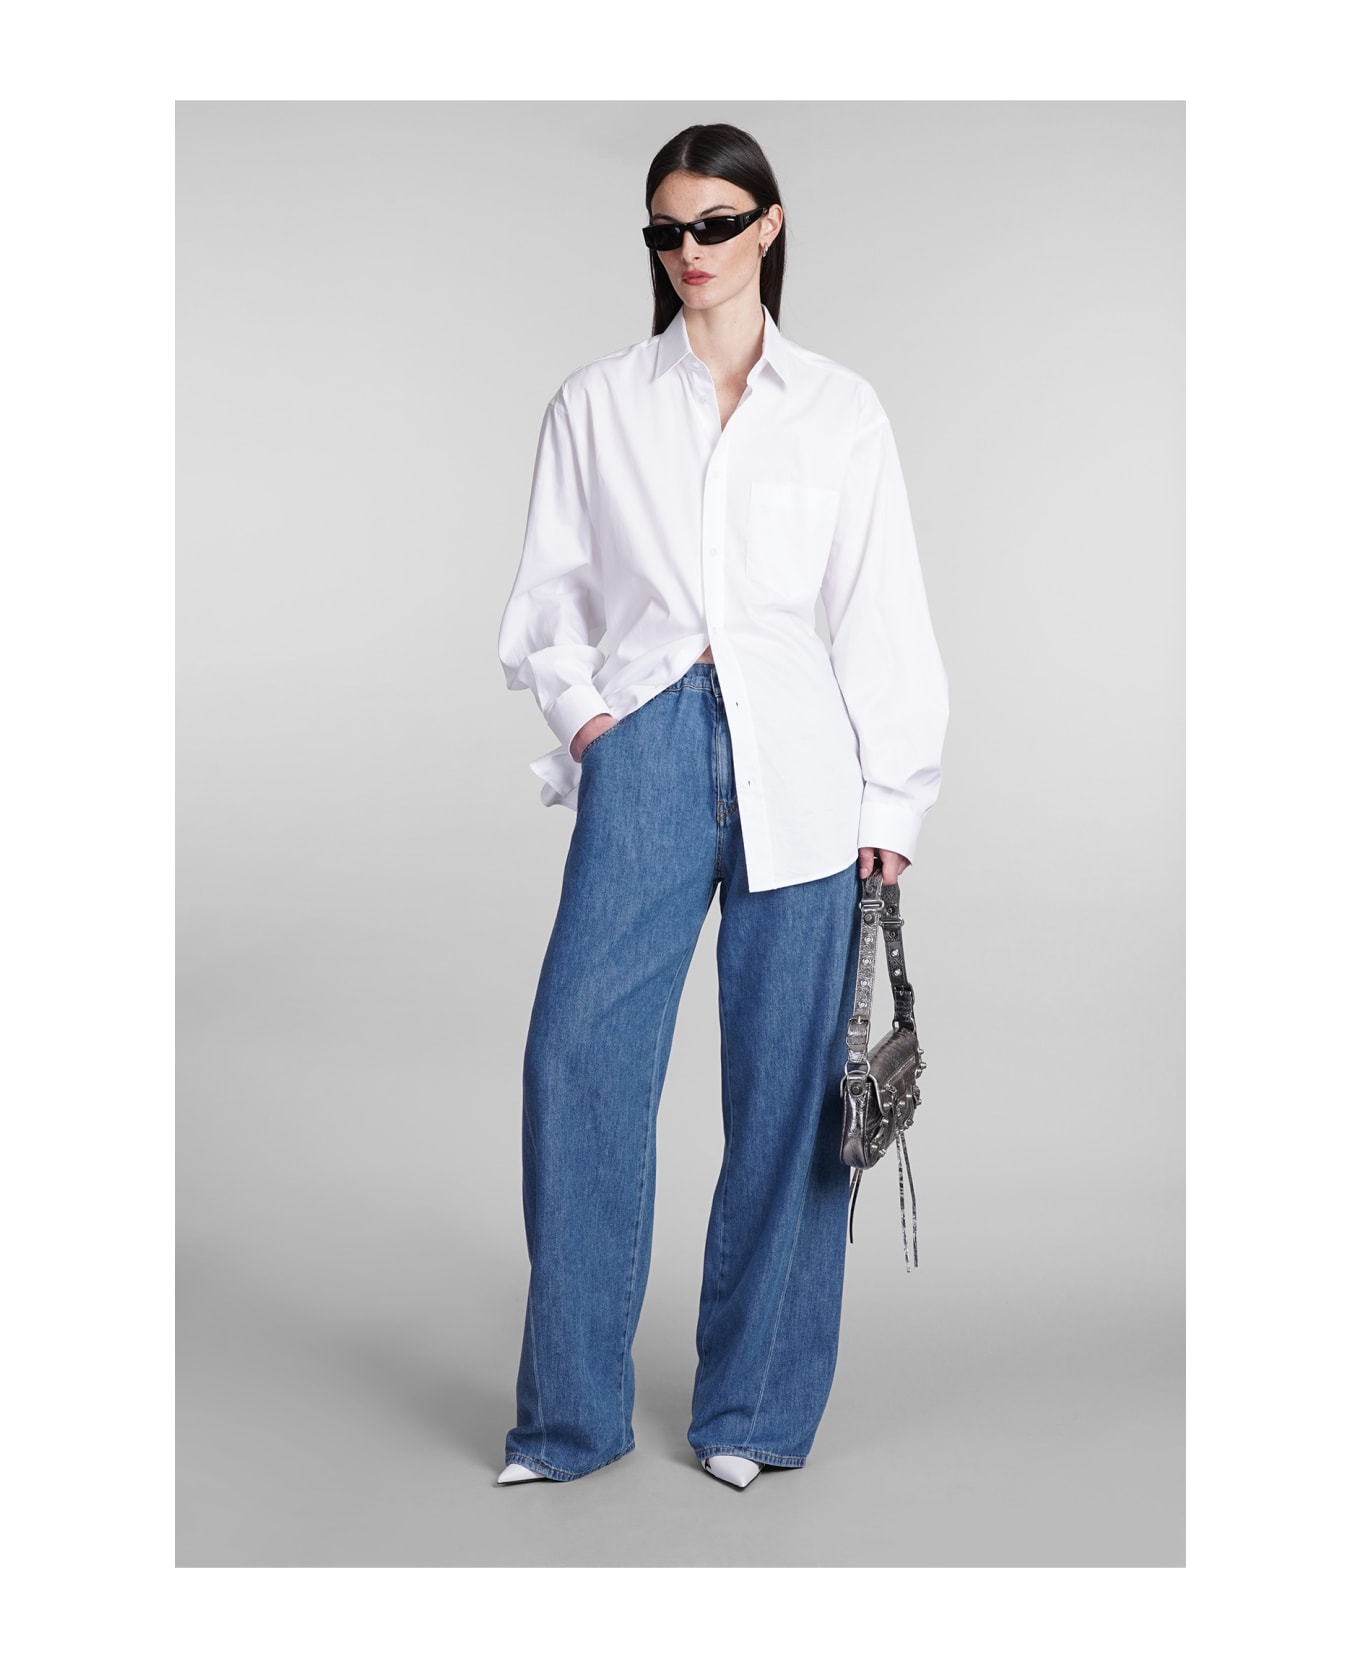 DARKPARK Iris Jeans In Blue Cotton - blue デニム